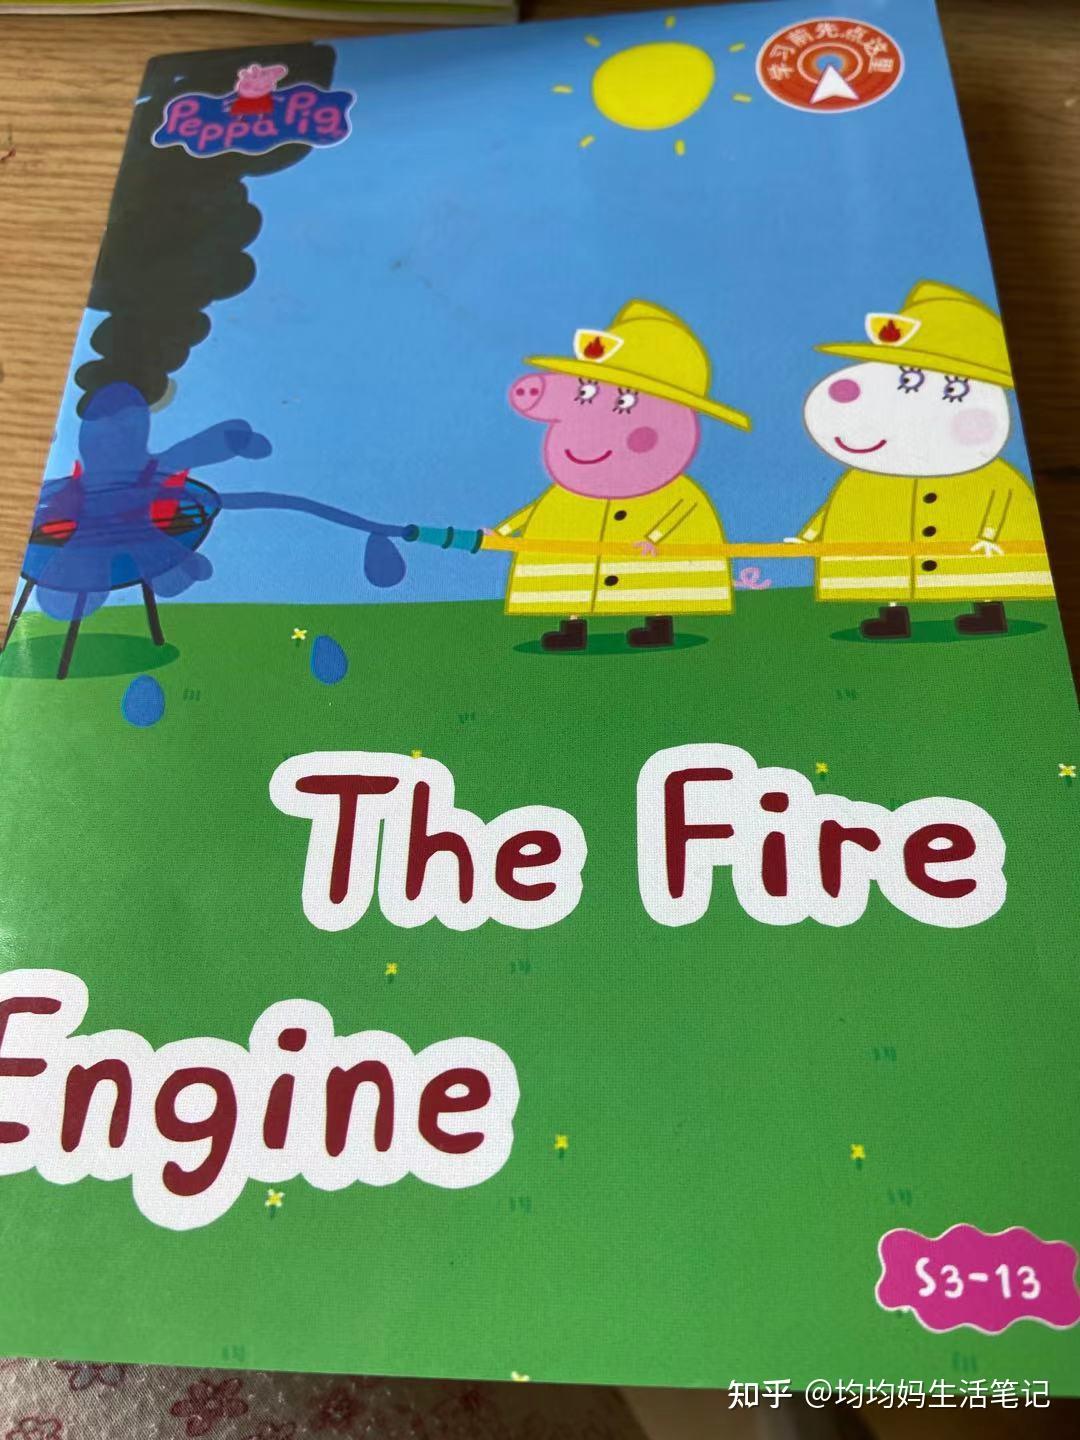 乔治说:fire engine2,在小猪3第